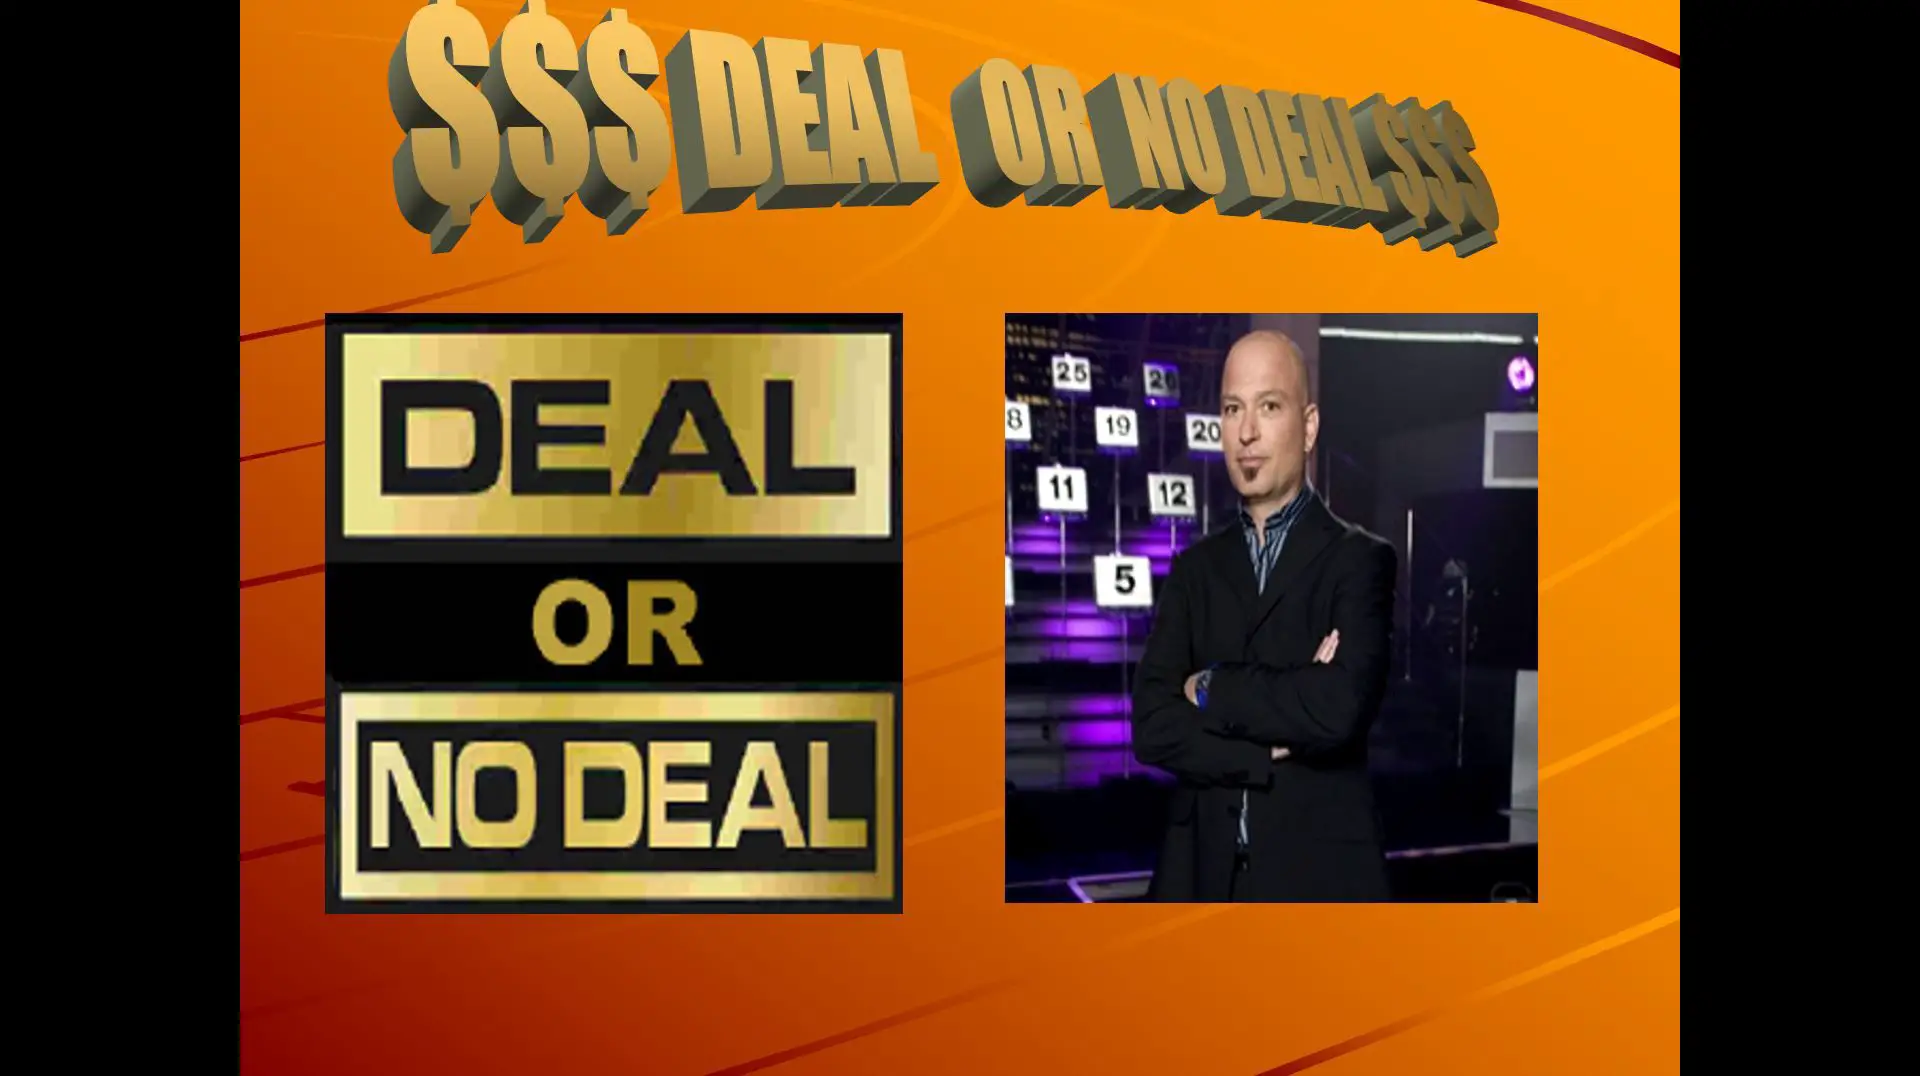 Tela de abertura do modelo A Deal or No Deal PowerPoint.